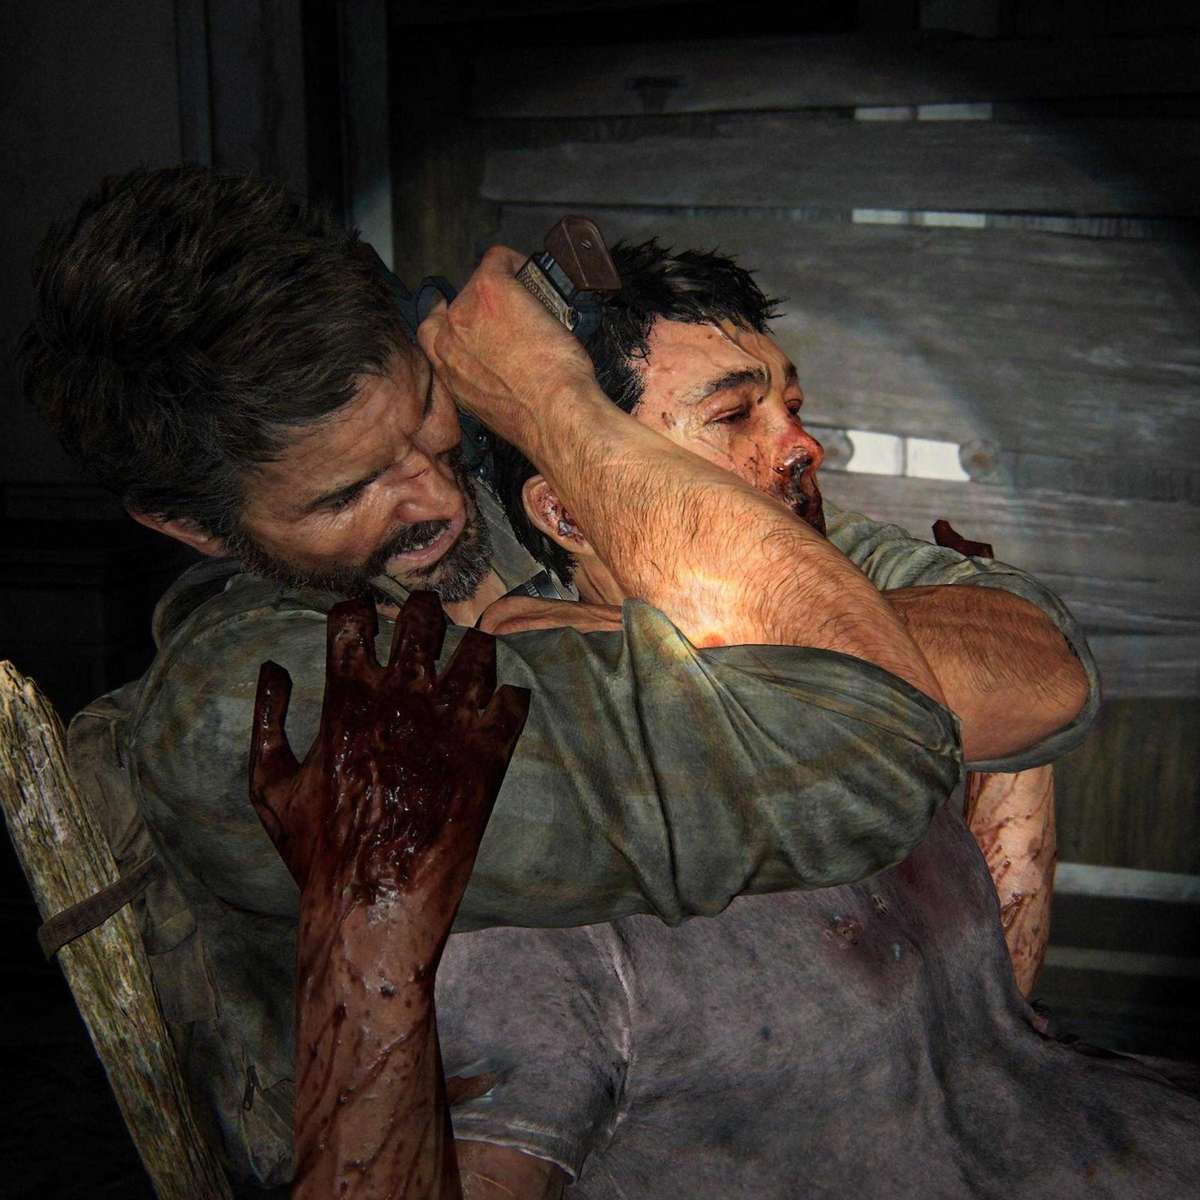 The Last of Us, review da história do jogo. - Origina Conteúdo